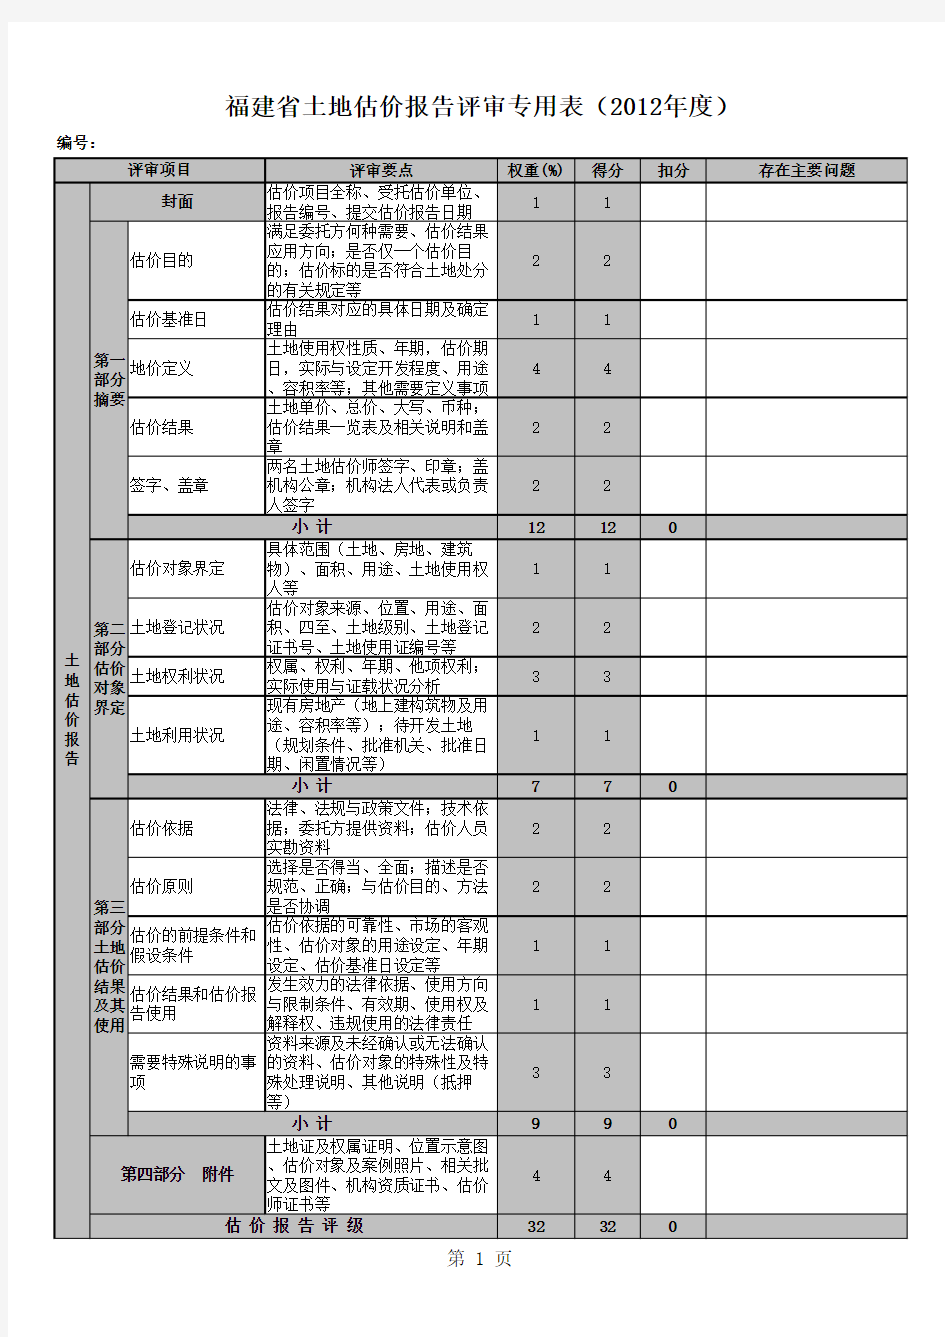 福建省土地估价报告评审专用表(2013版)